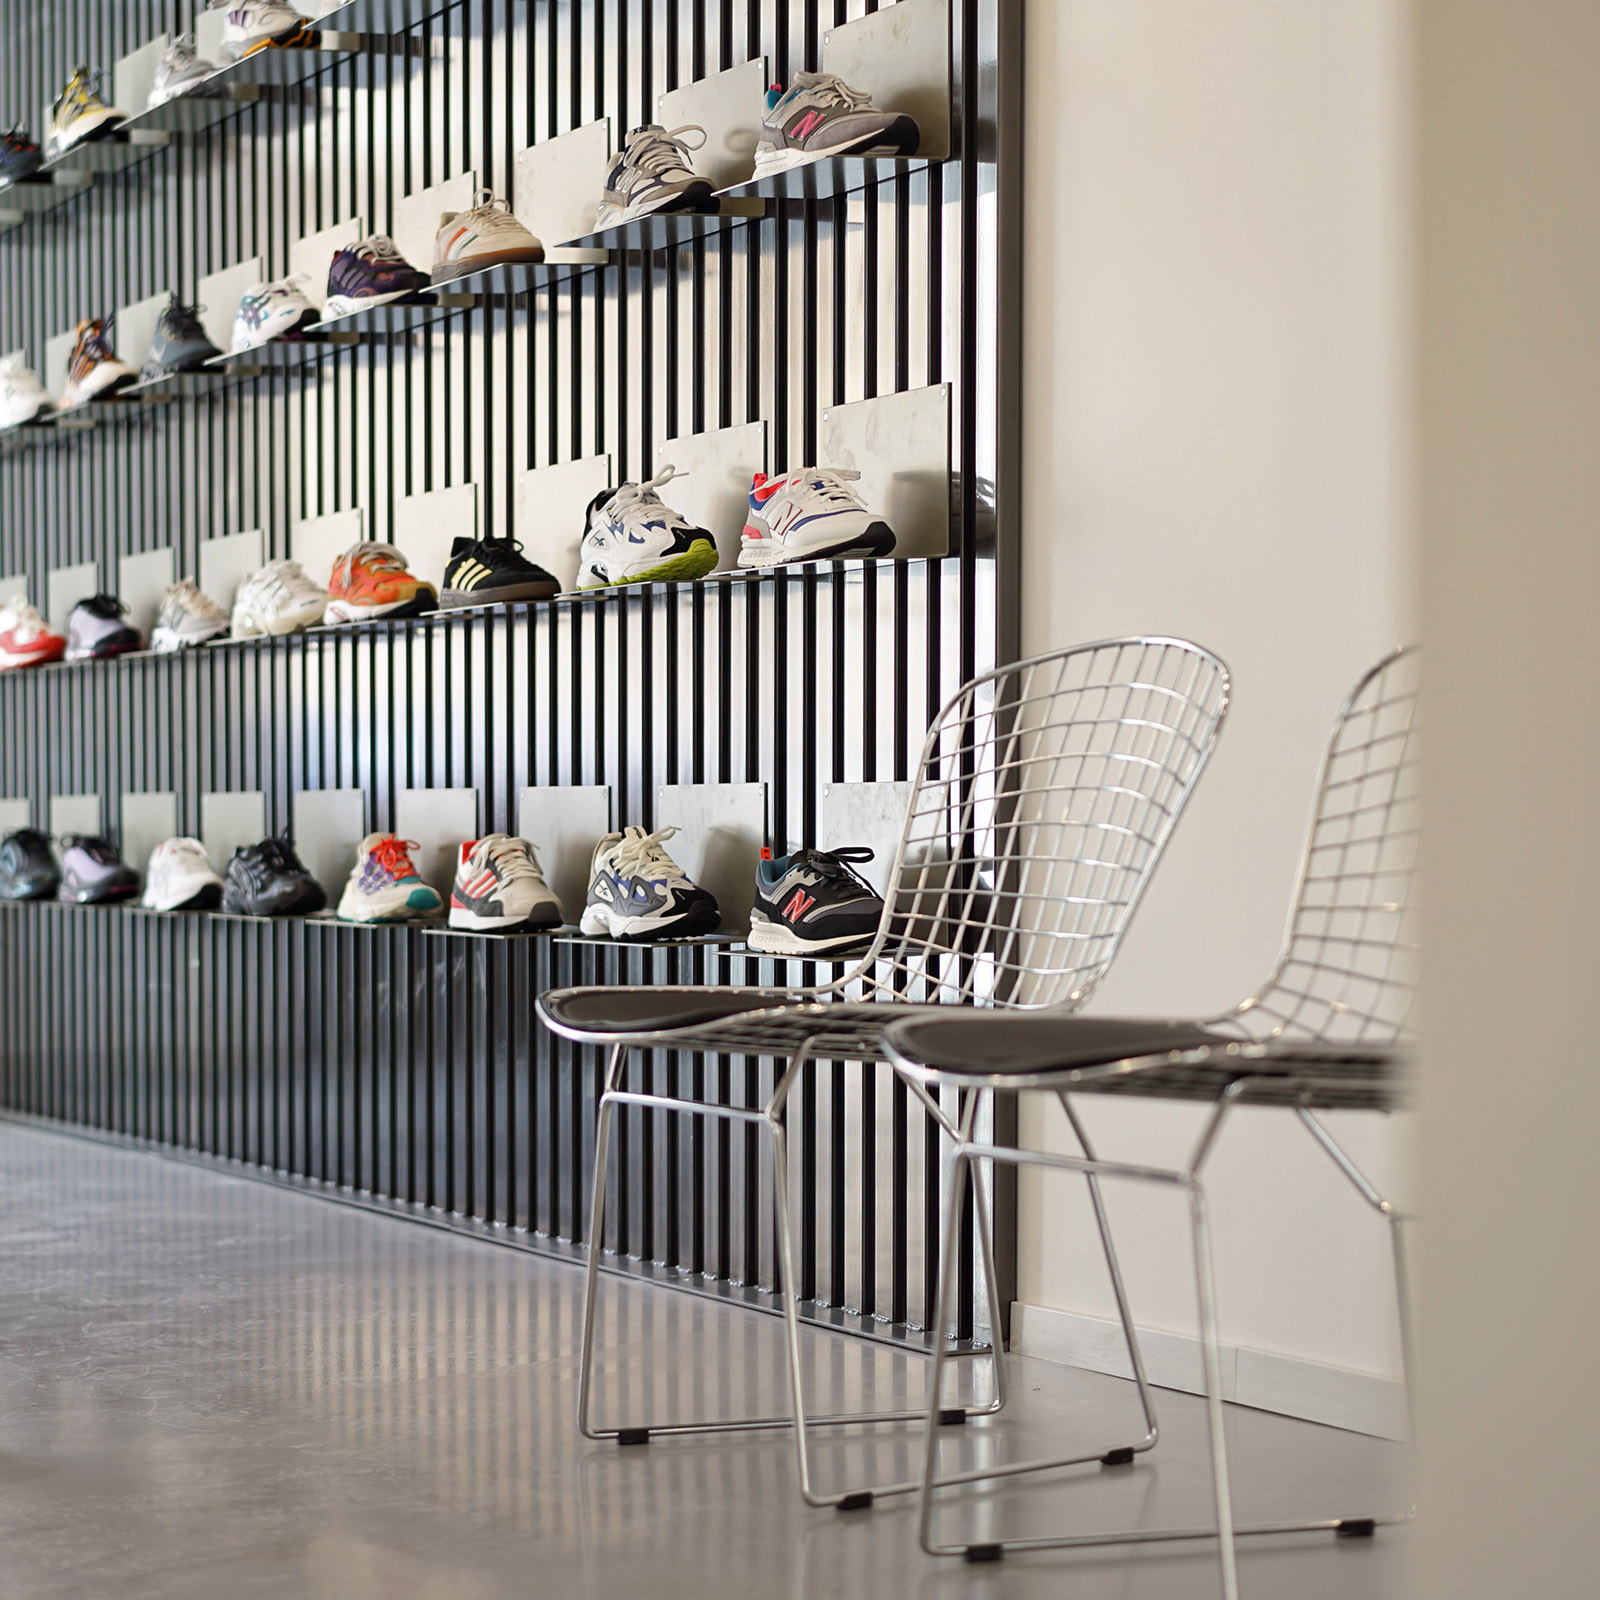 Boutique Sneakers | NOVOID KICKS (Aix-en-Provence)